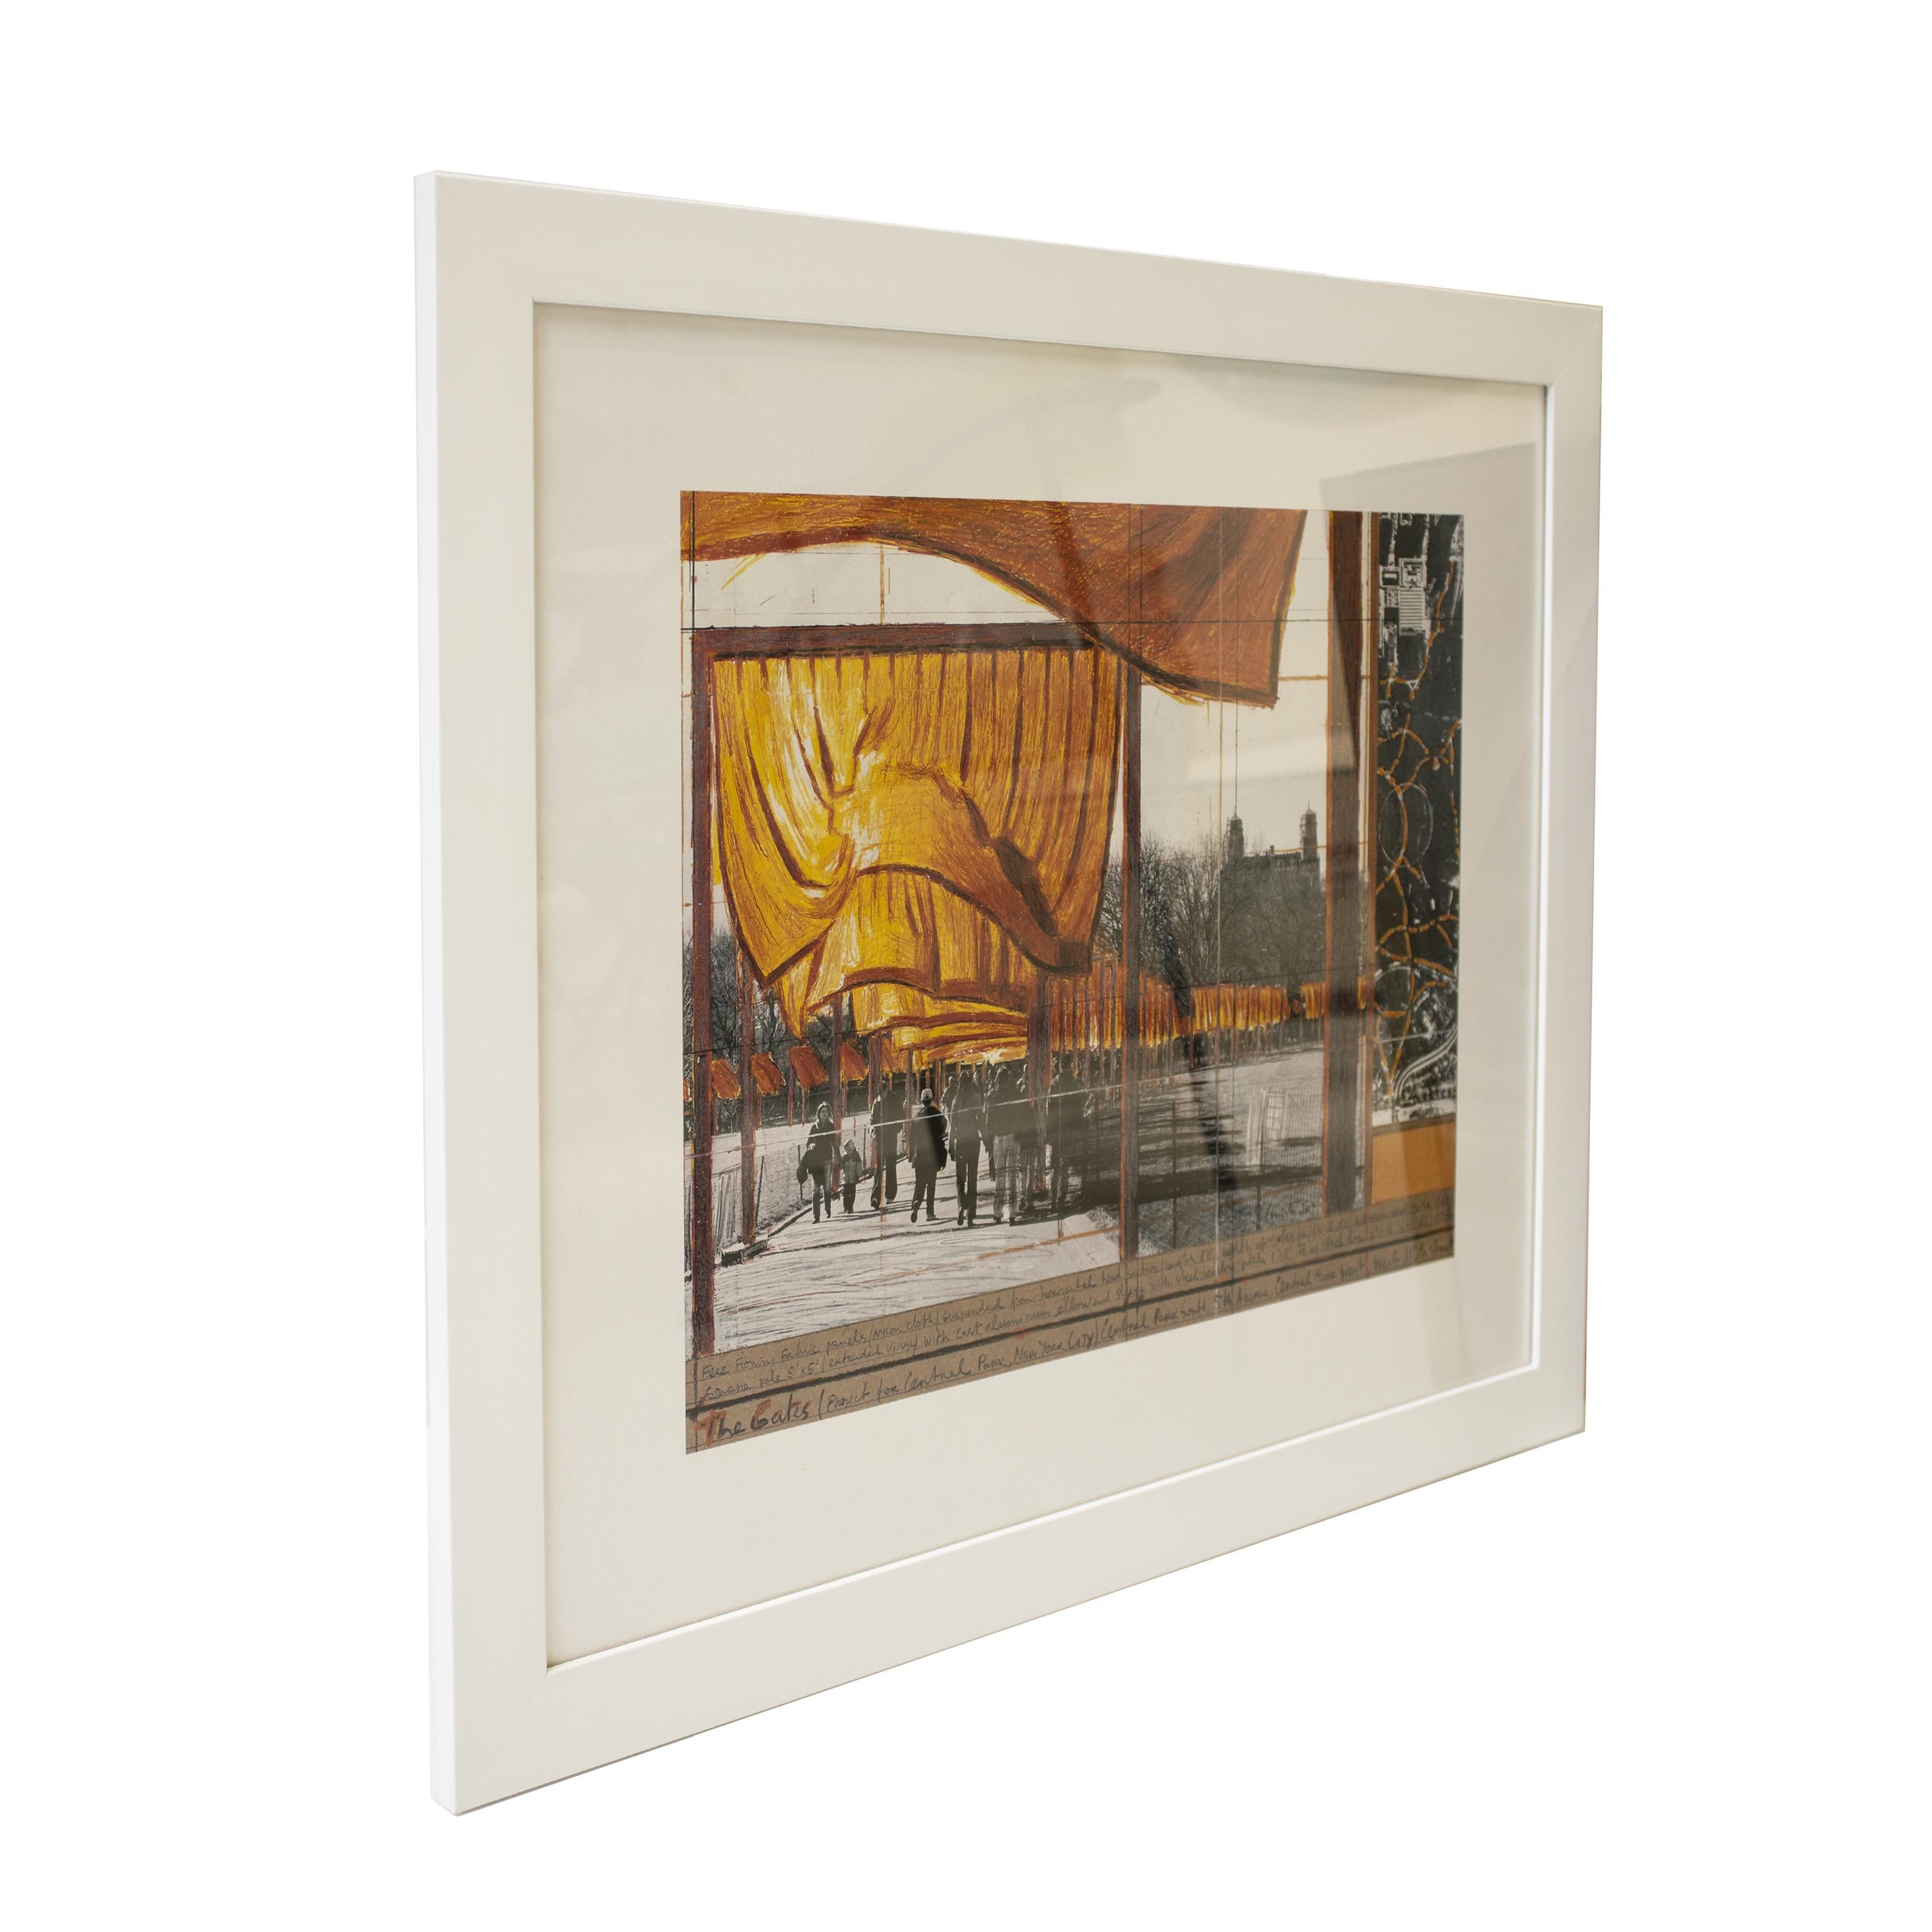 Lithographie contemporaine en couleurs du projet pour Central Park, New York City, créé en 2004 par Christo et Jeanne-Claude.
Le tirage est encadré dans un cadre en bois blanc avec une façade en verre transparent.

L'installation à Central Park